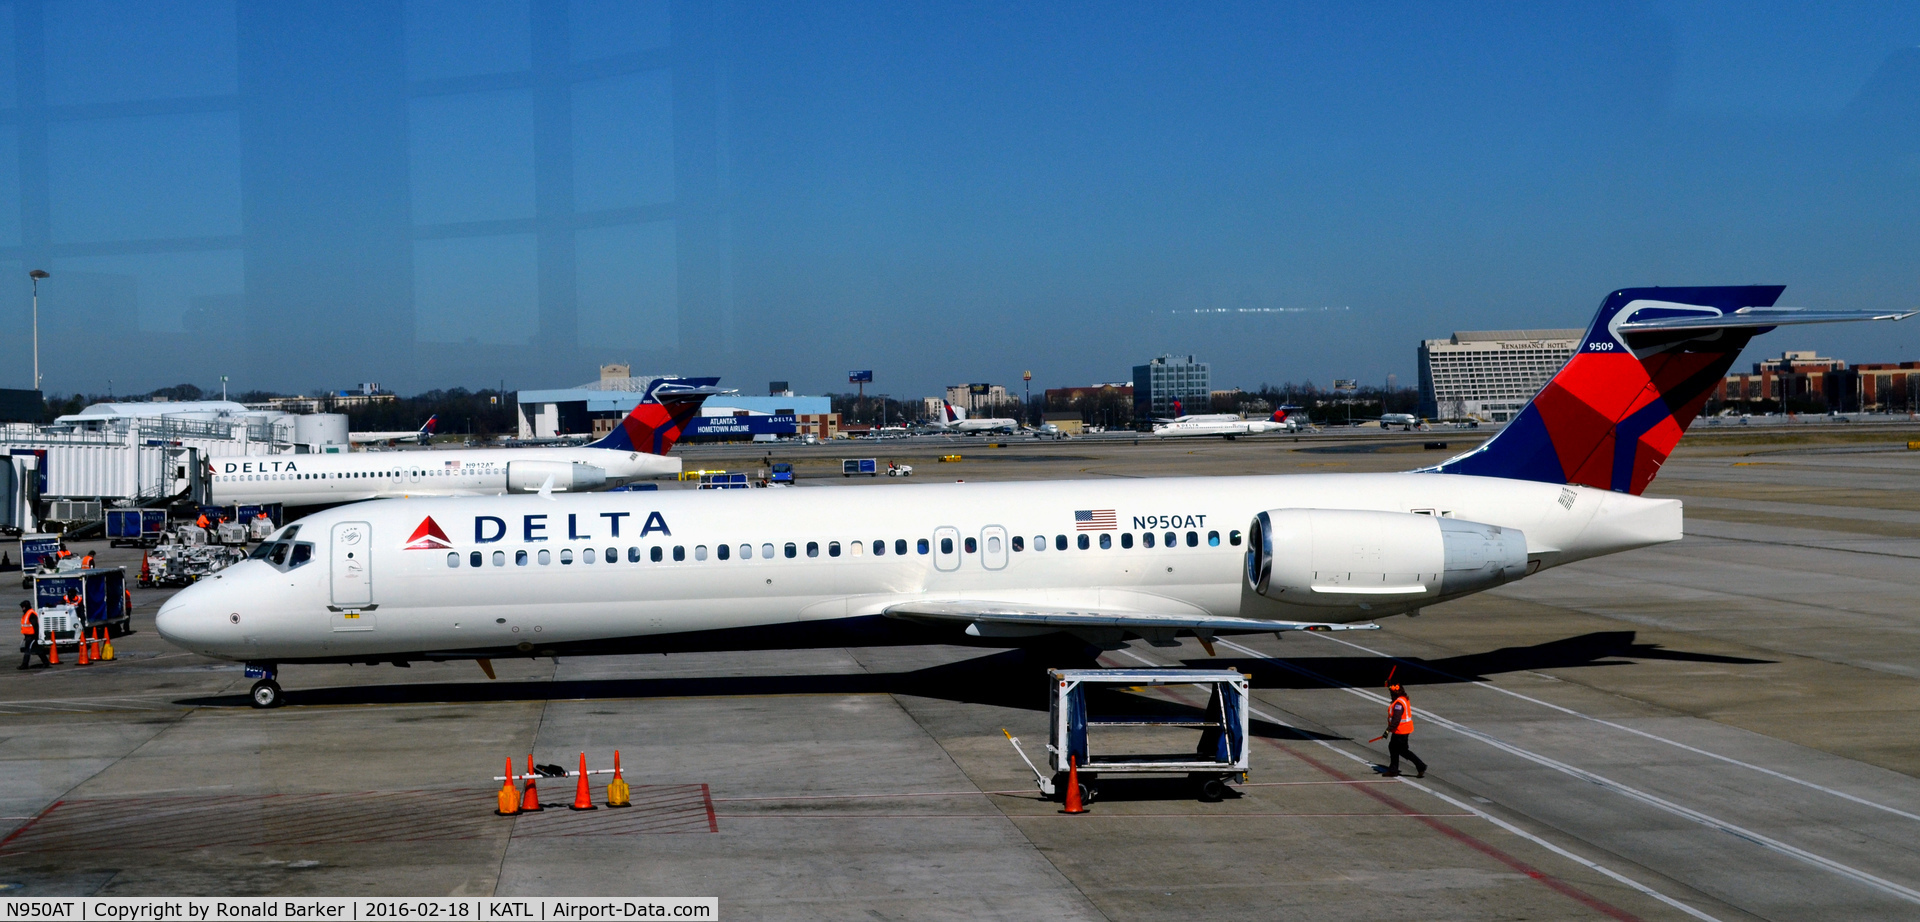 N950AT, 2000 Boeing 717-200 C/N 55012, Arriving at gate Atlanta